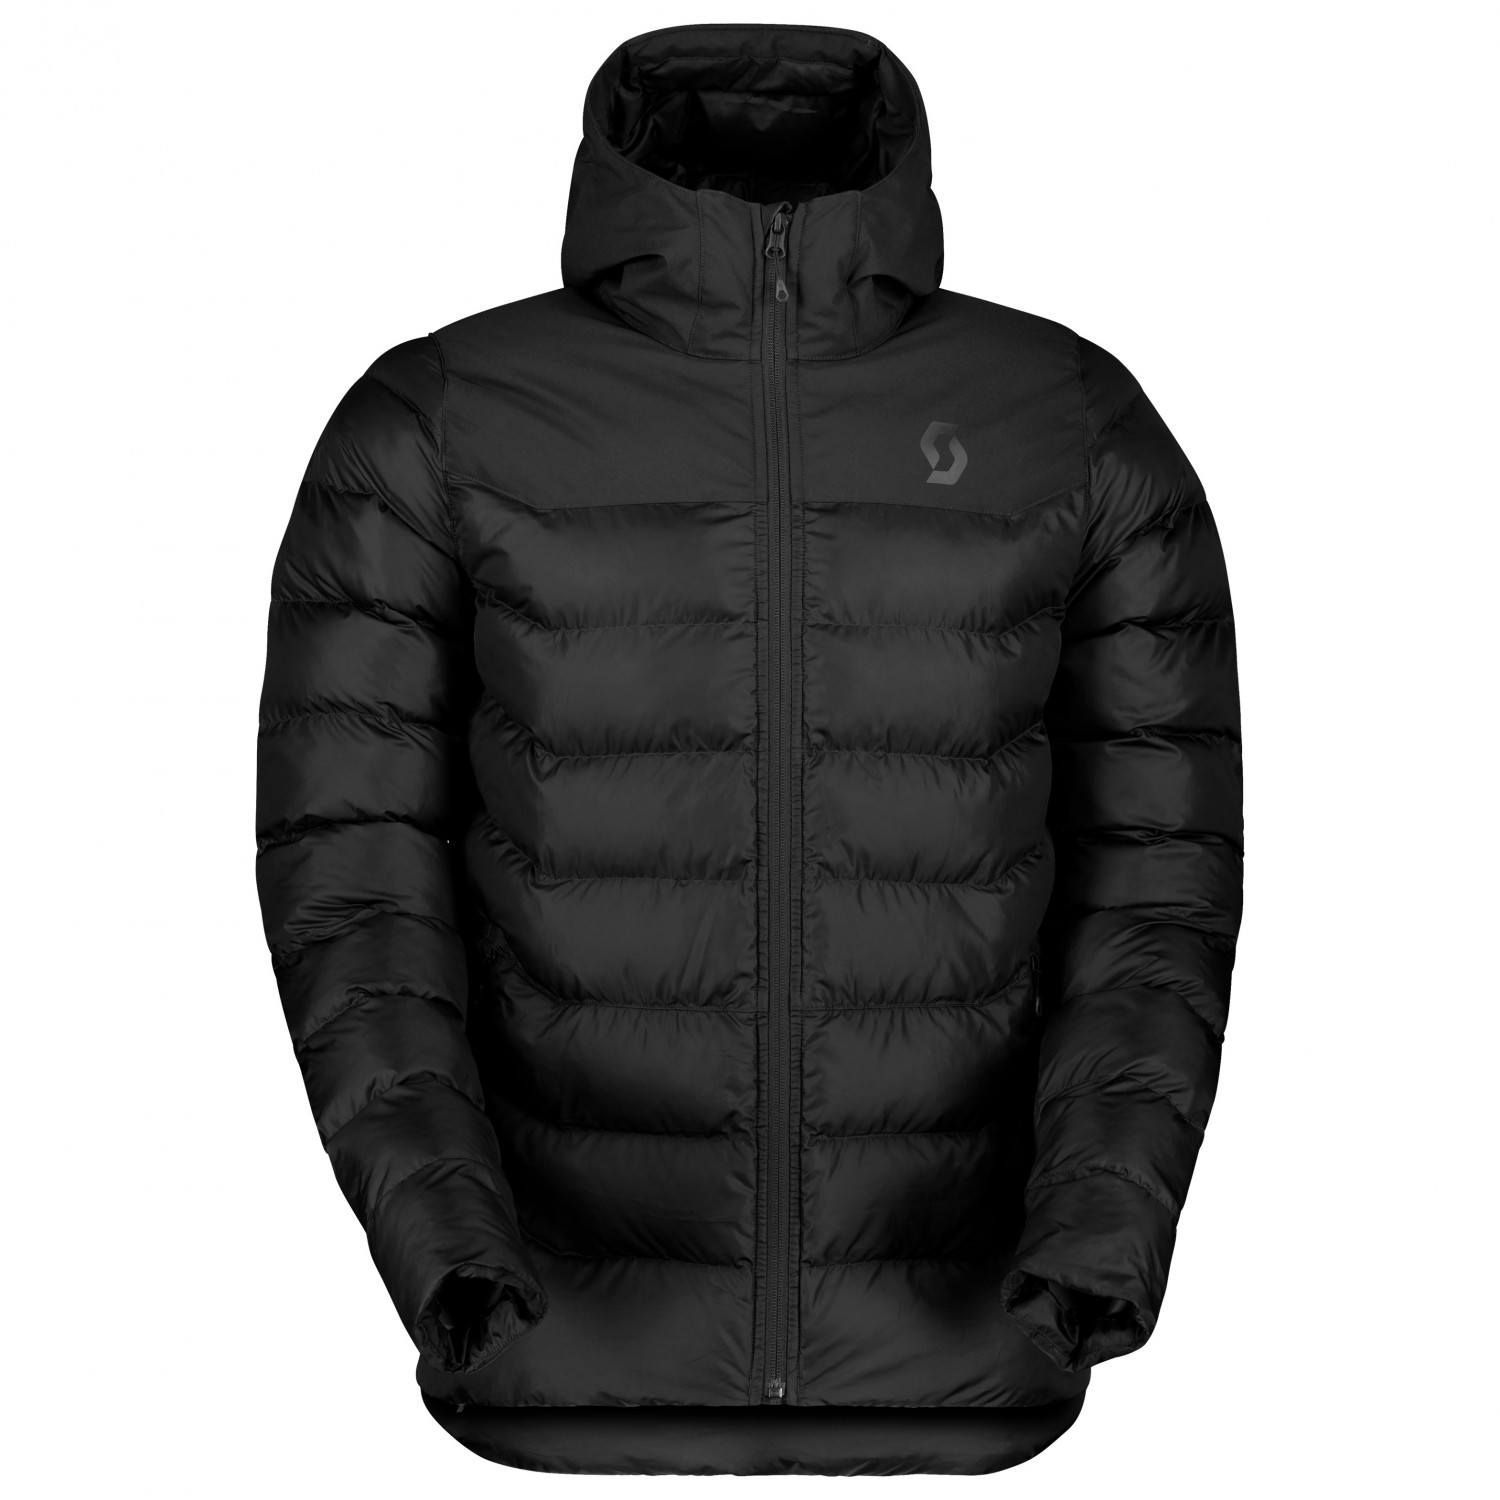 Scott - Jacket Insuloft Warm - Kunstfaserjacke